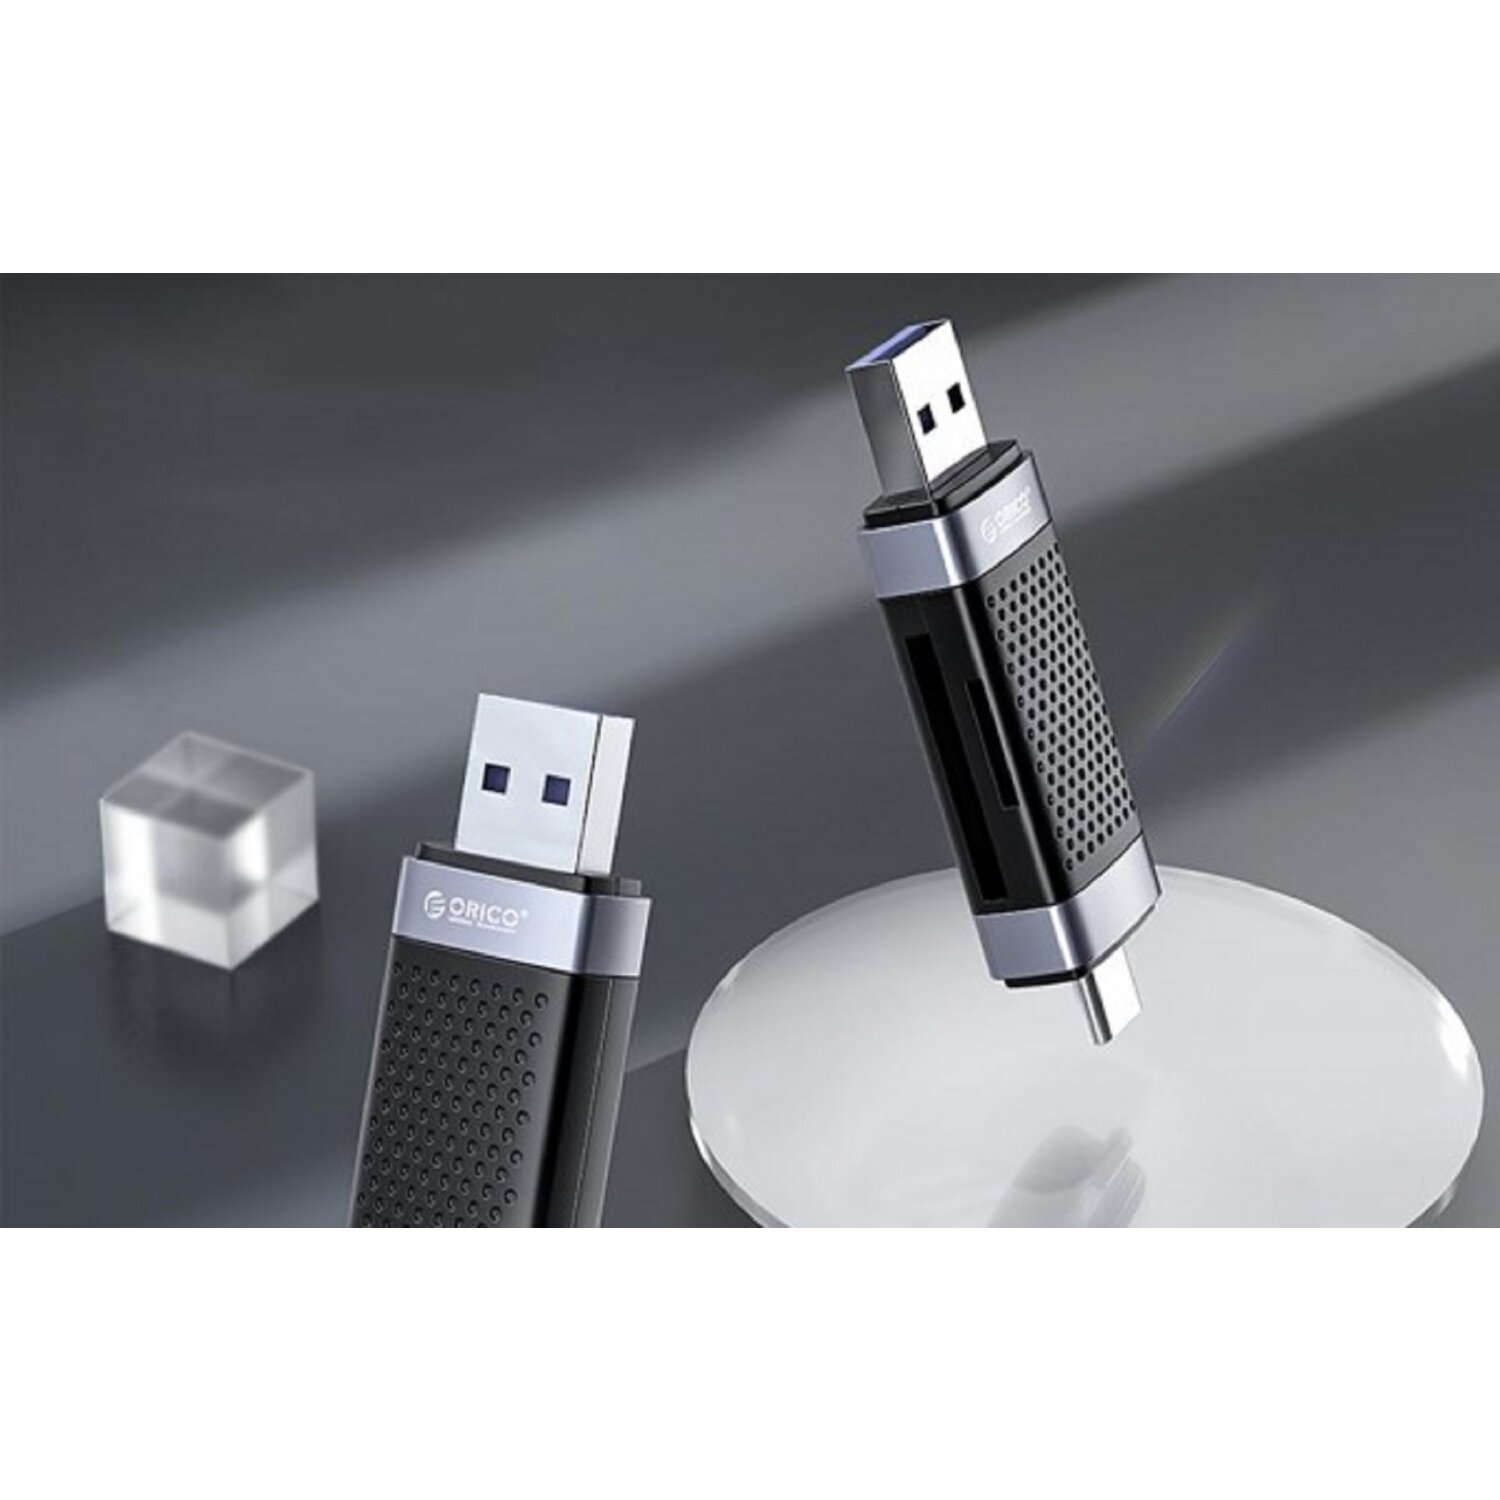 Cardreader SD USB / ORICO für + USB-C 2.0 Kartenleser USB MicroSD,